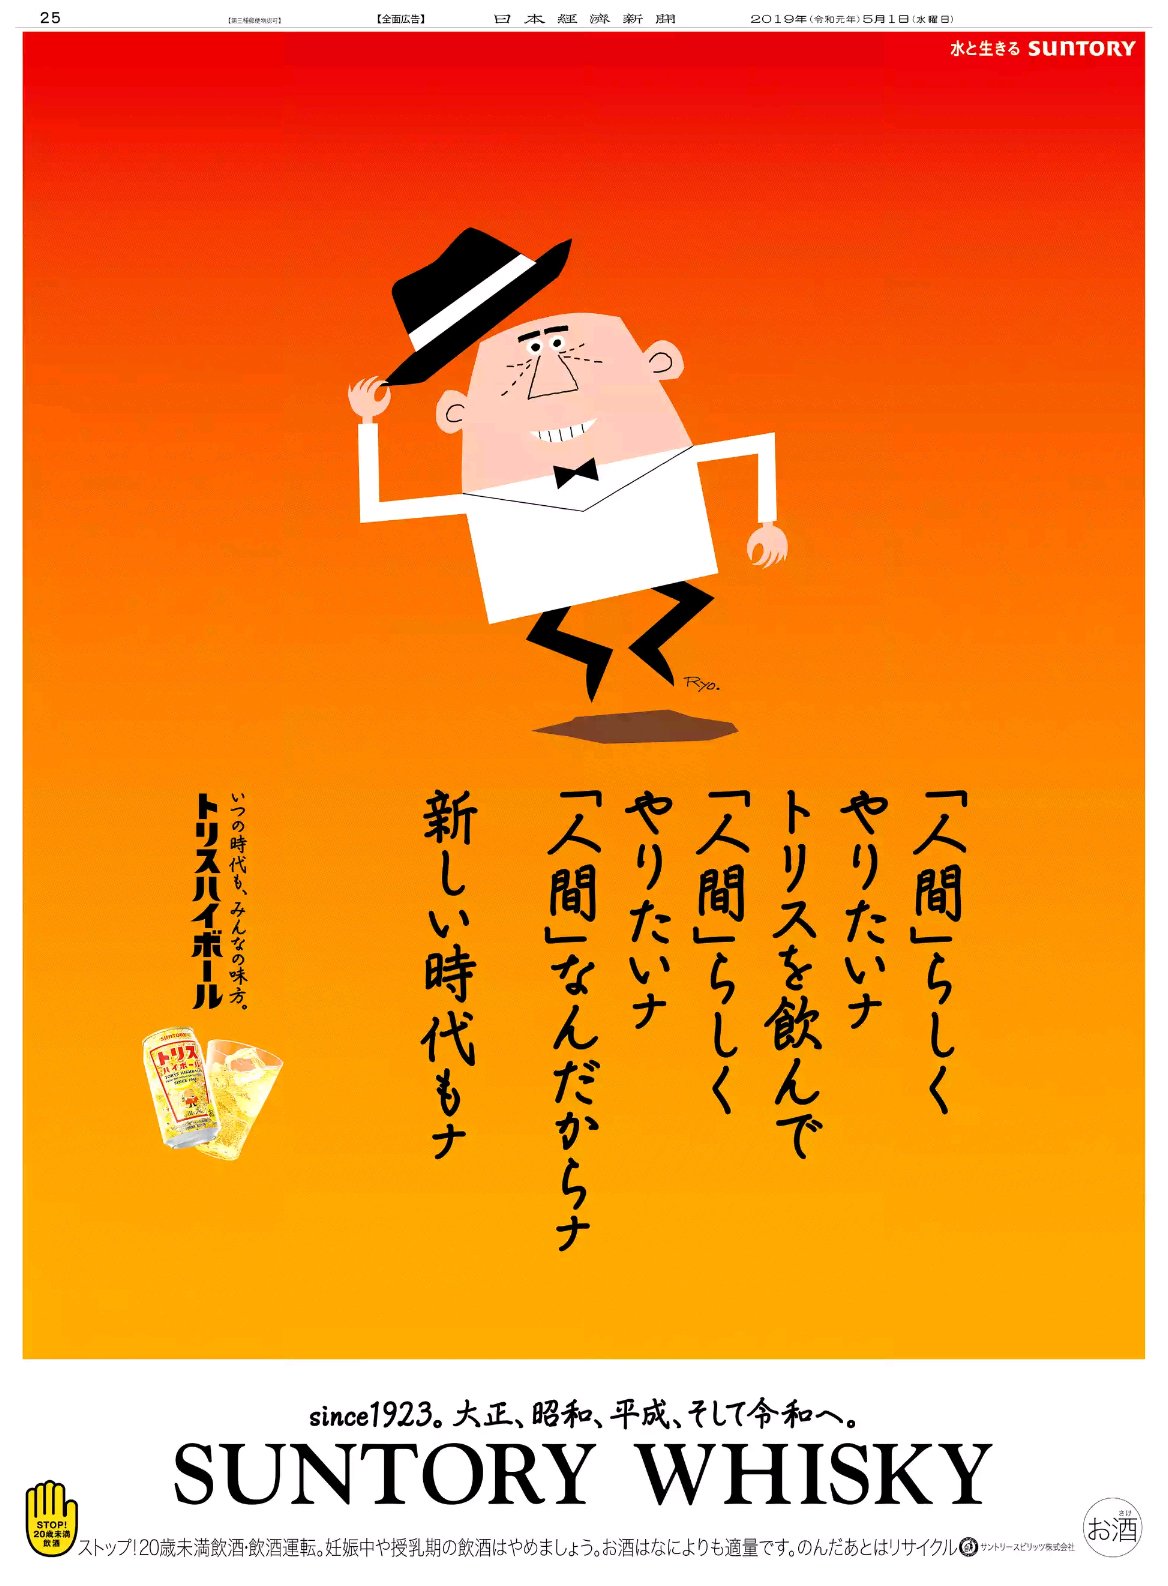 Nikkei Brand Voice 日本経済新聞の広告紹介アカウント 日経広告手帖速報版 アンコール 令和の幕が開けてから早１年 昨年5 1 令和初日 に掲載された広告を紹介します ベテラン広告マンたちが感涙にむせんだ サントリー アンクルトリス